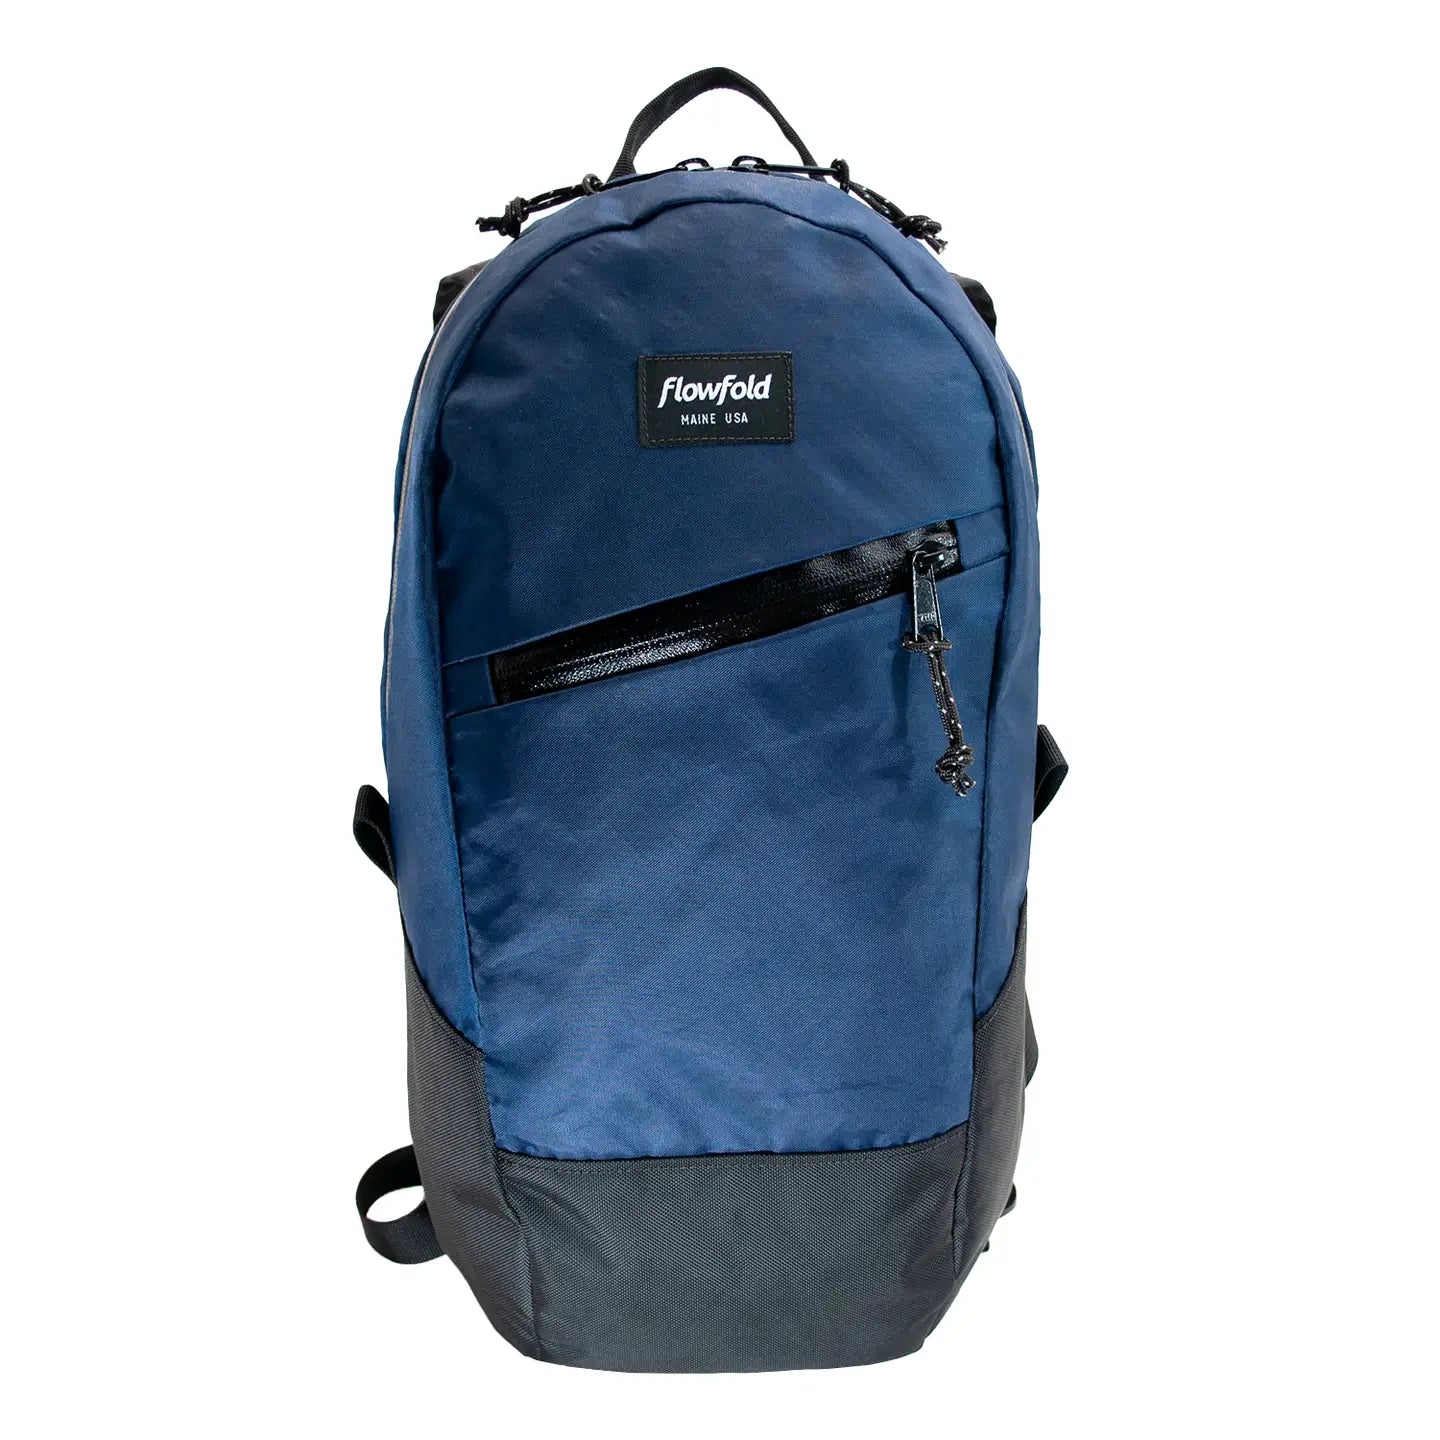 Flowfold | Optimist Backpack, Backpacks, Flowfold, Defiance Outdoor Gear Co.